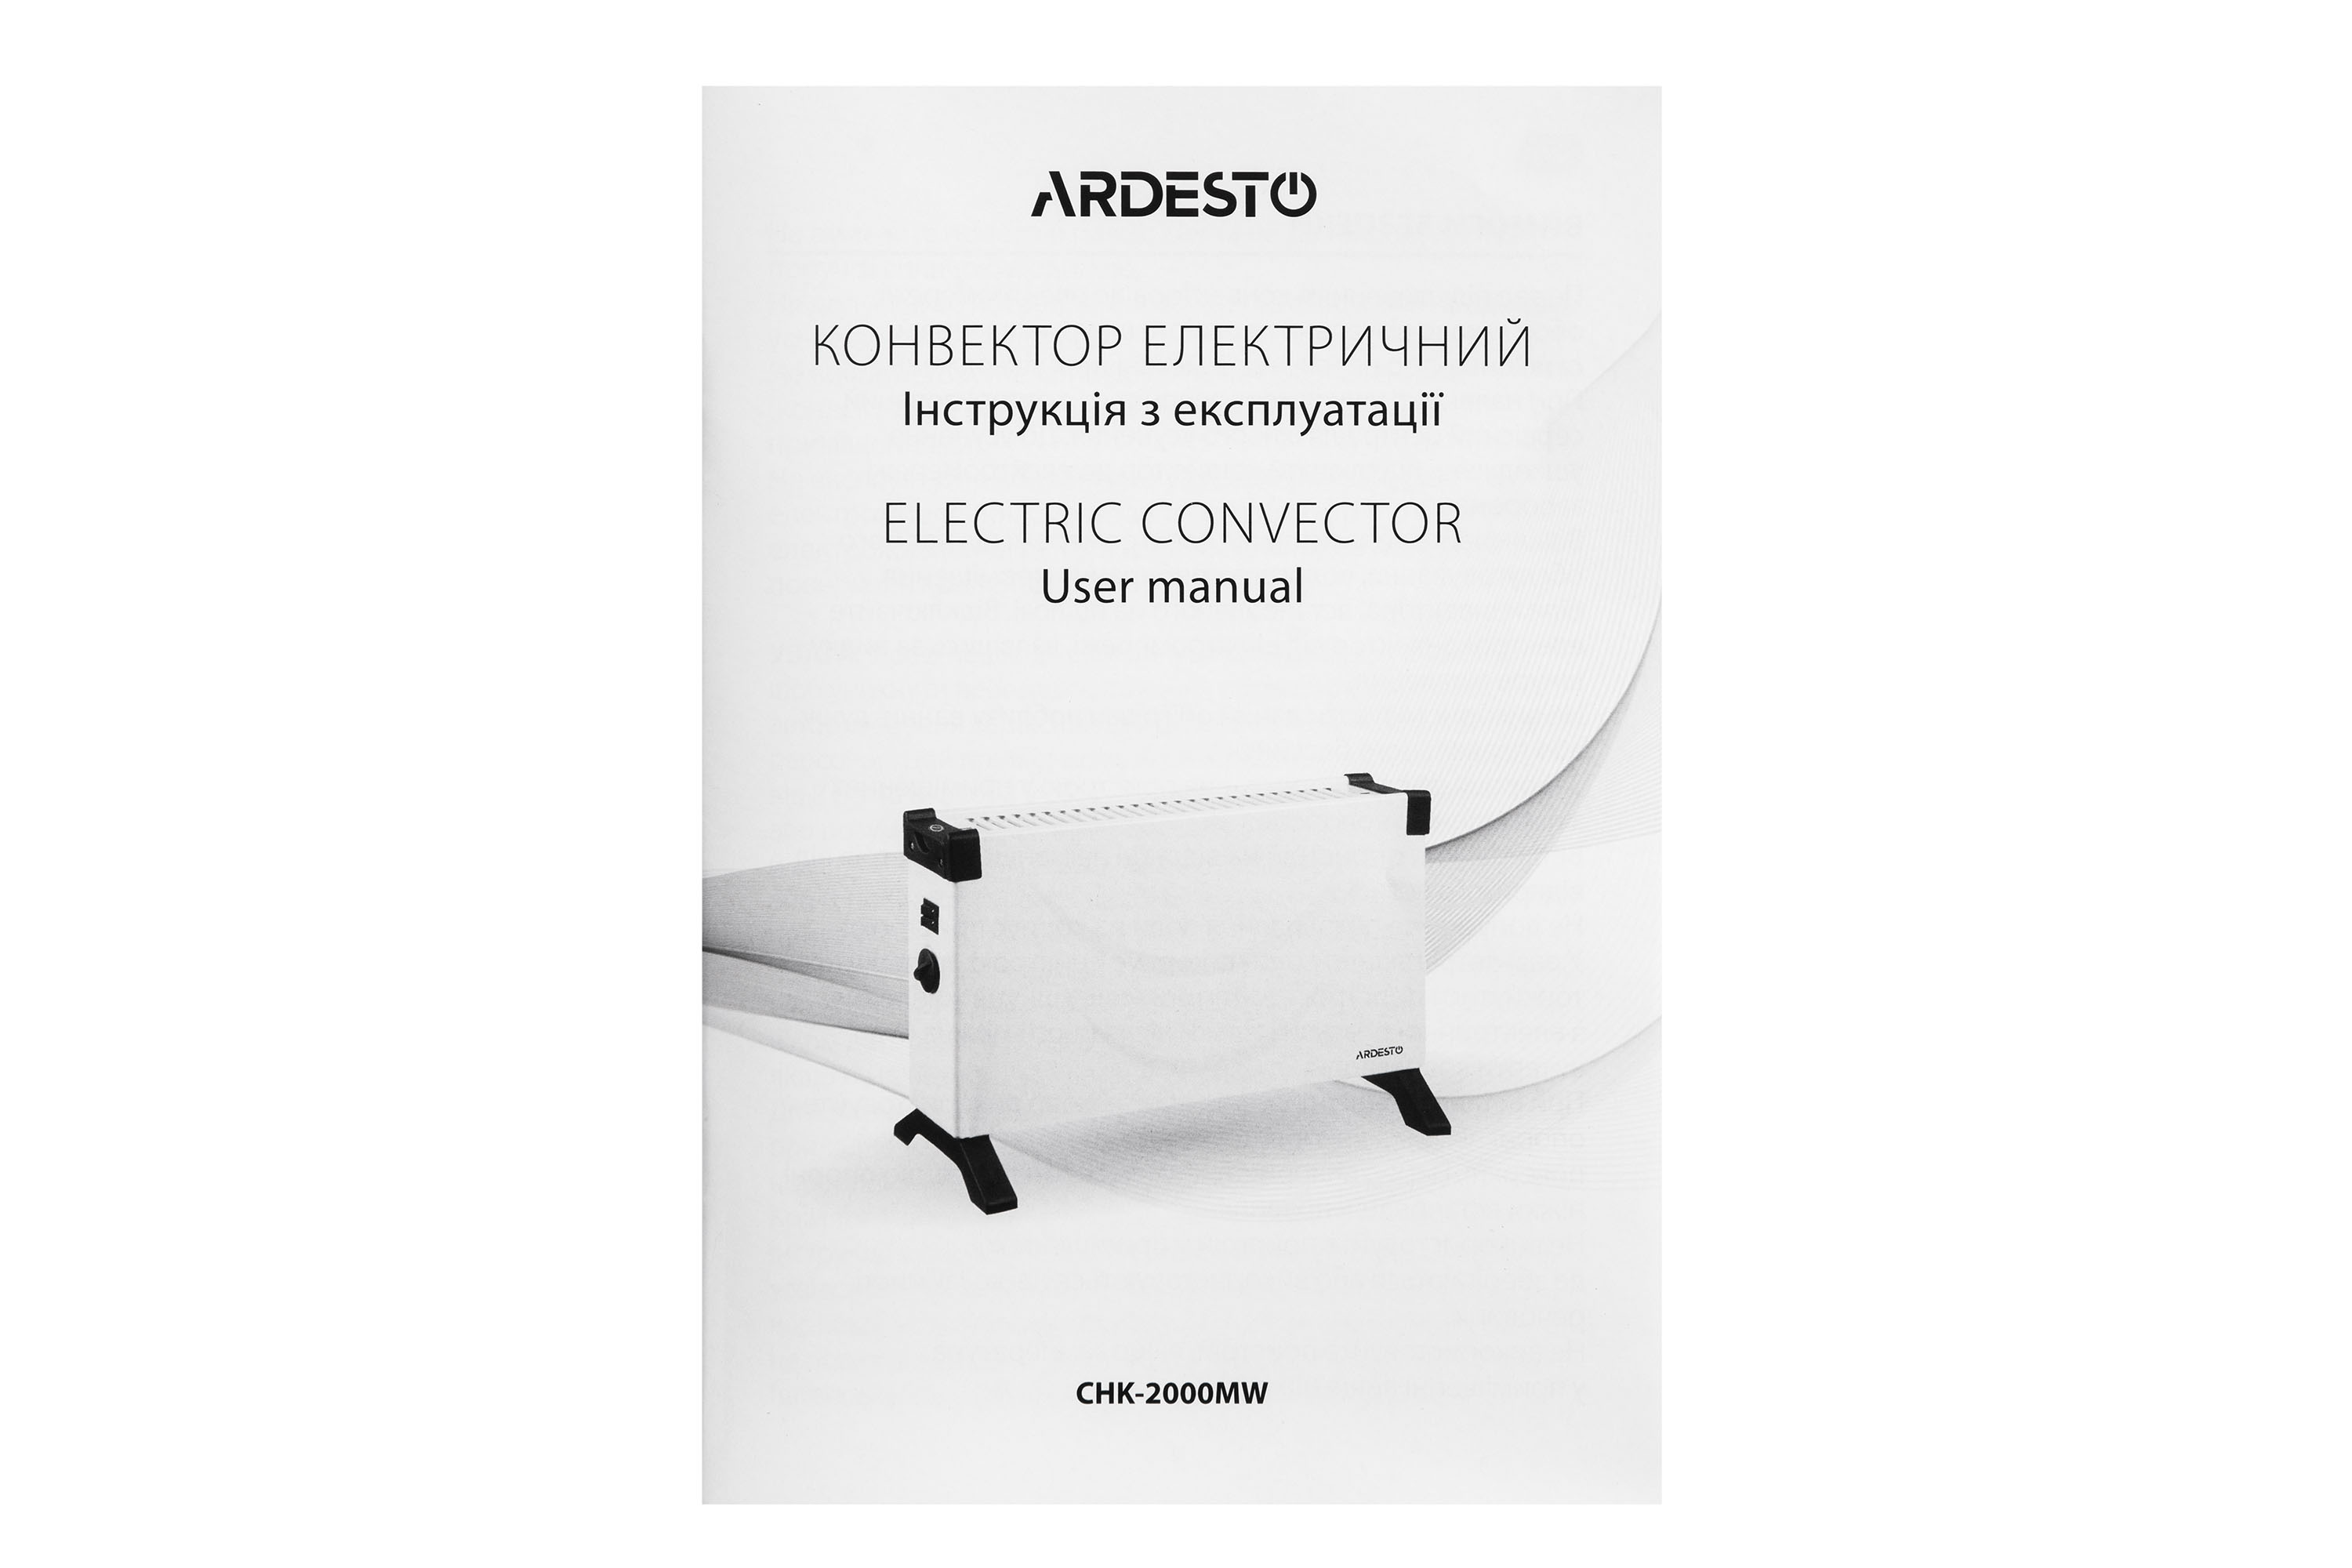 Електричний конвектор Ardesto CHK-2000MW зовнішній вигляд - фото 9